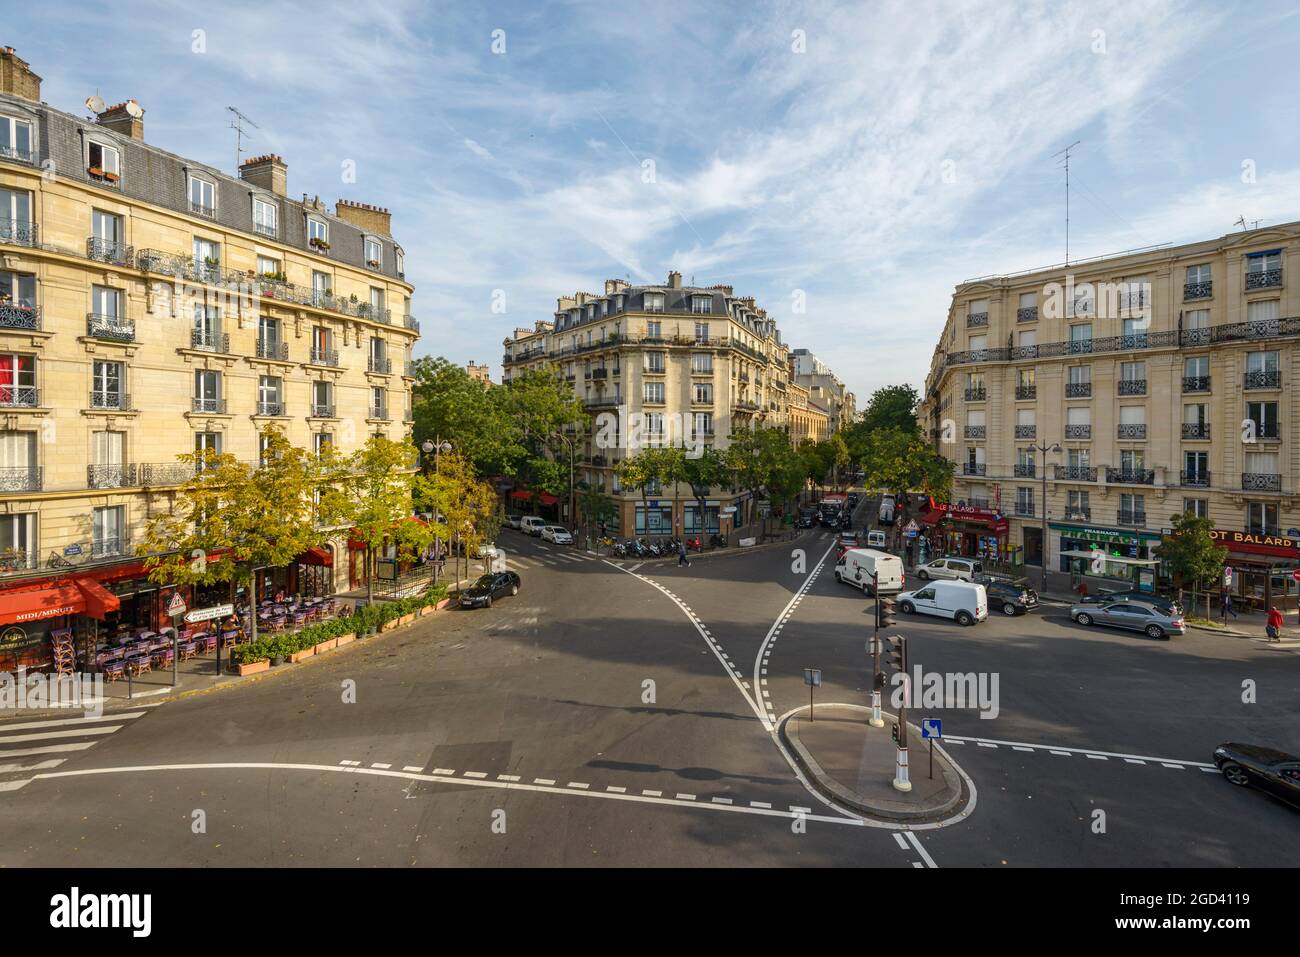 FRANCE, PARIS (75015), PLACE BALARD Stock Photo